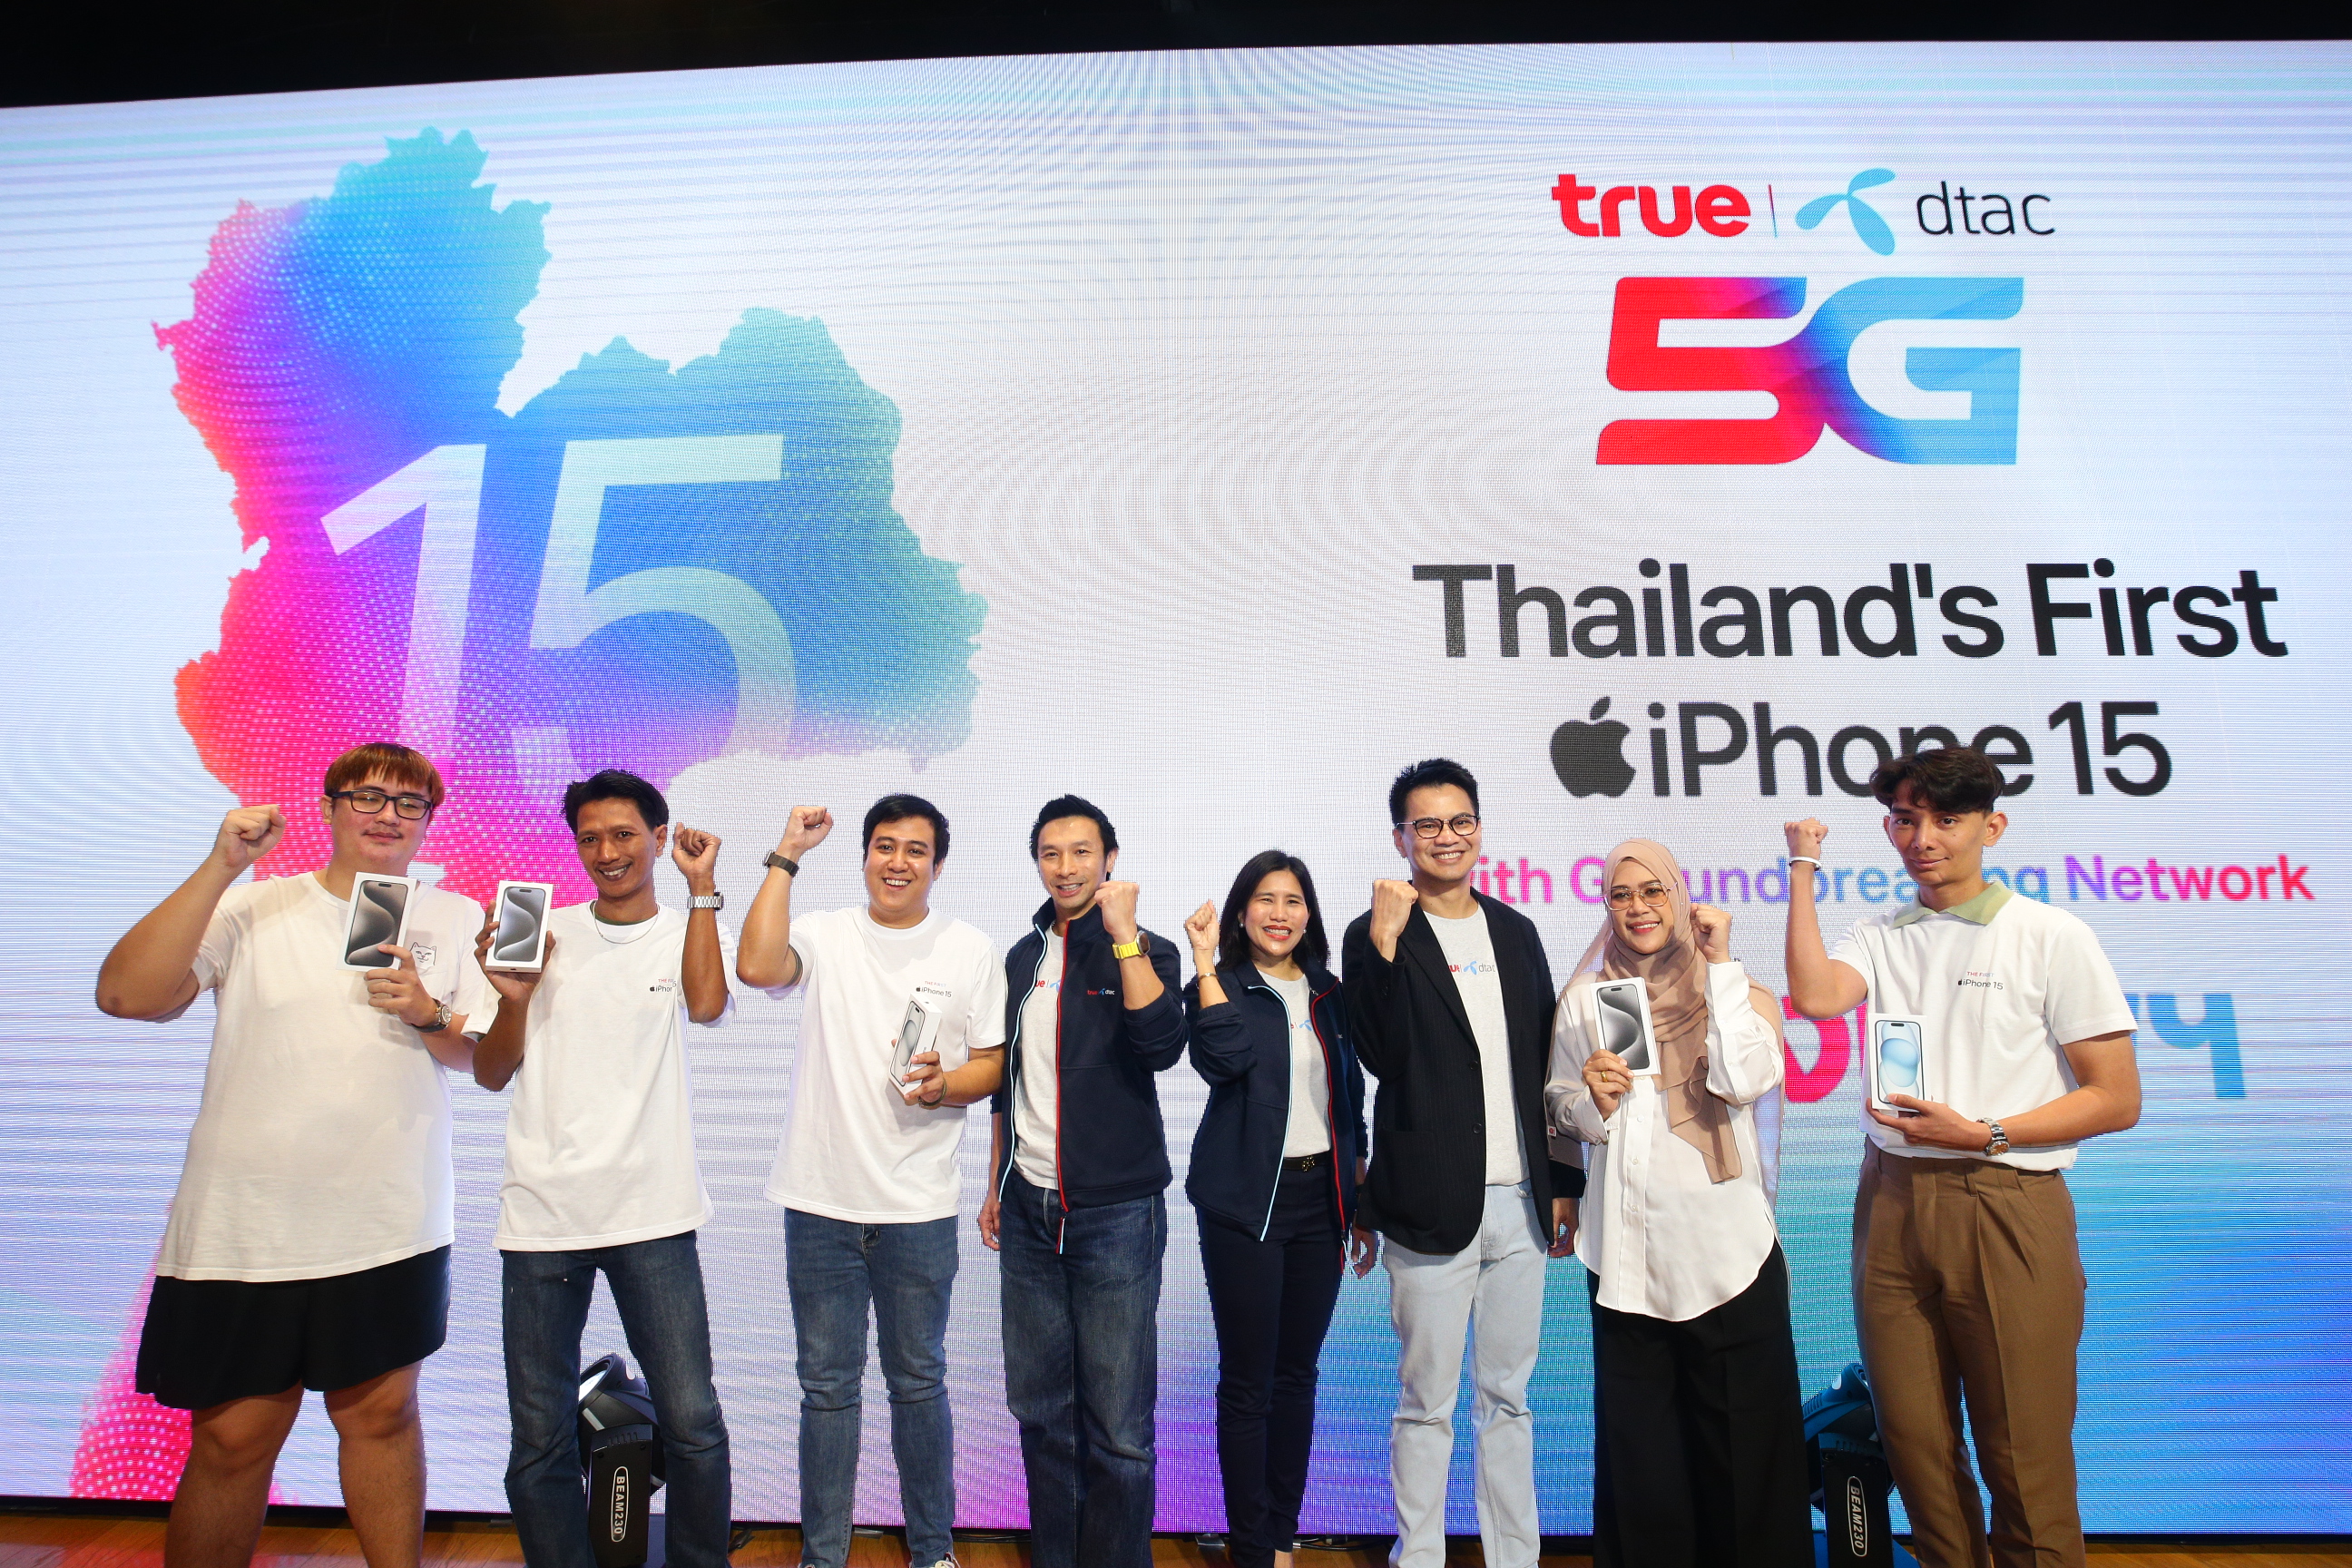 ทรู-ดีแทค จัดใหญ่ส่งมอบ iPhone 15 บนเครือข่าย 5G อัจฉริยะให้คนไทยกลุ่มแรก แบบพร้อมกันทุกภาคทั่วประเทศ 'True dtac Thailand’s First iPhone 15 with Groundbreaking Network – Exclusive Live Pick up'